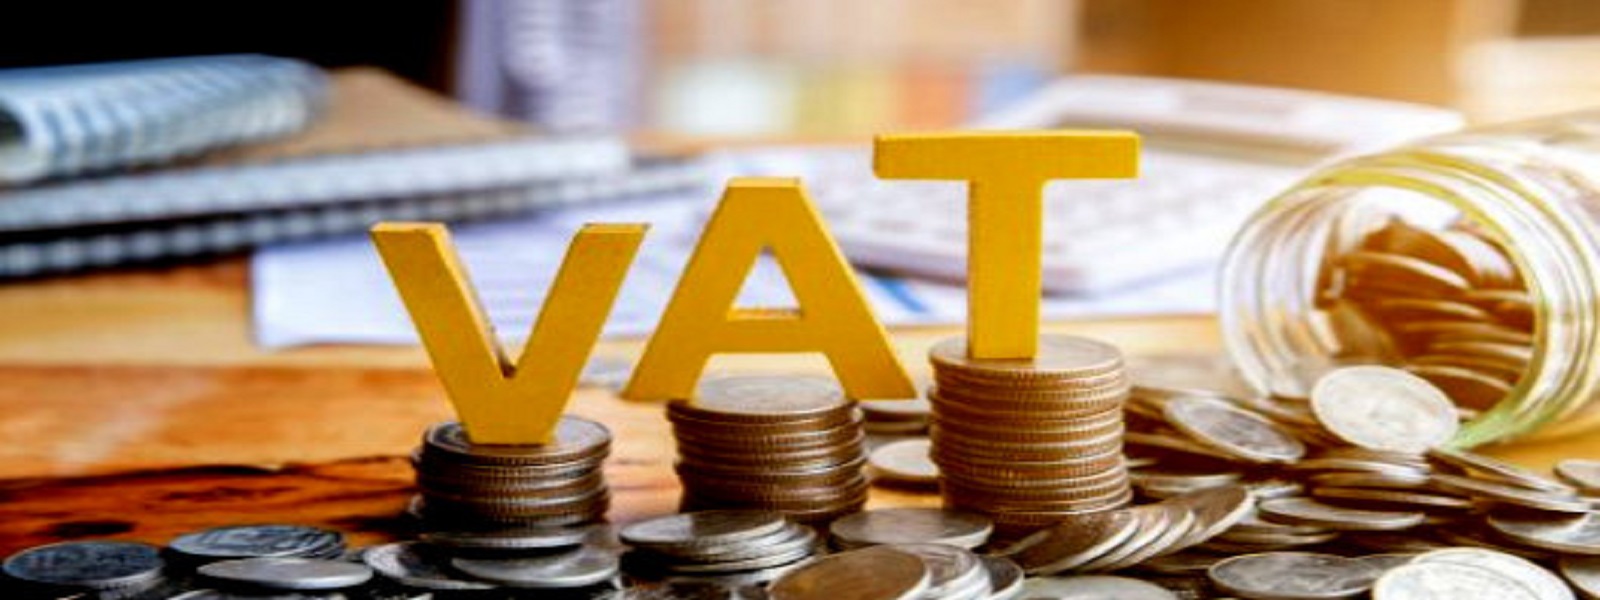 சுகாதார சேவைகளுக்கான VAT வரியை நீக்க நடவடிக்கை